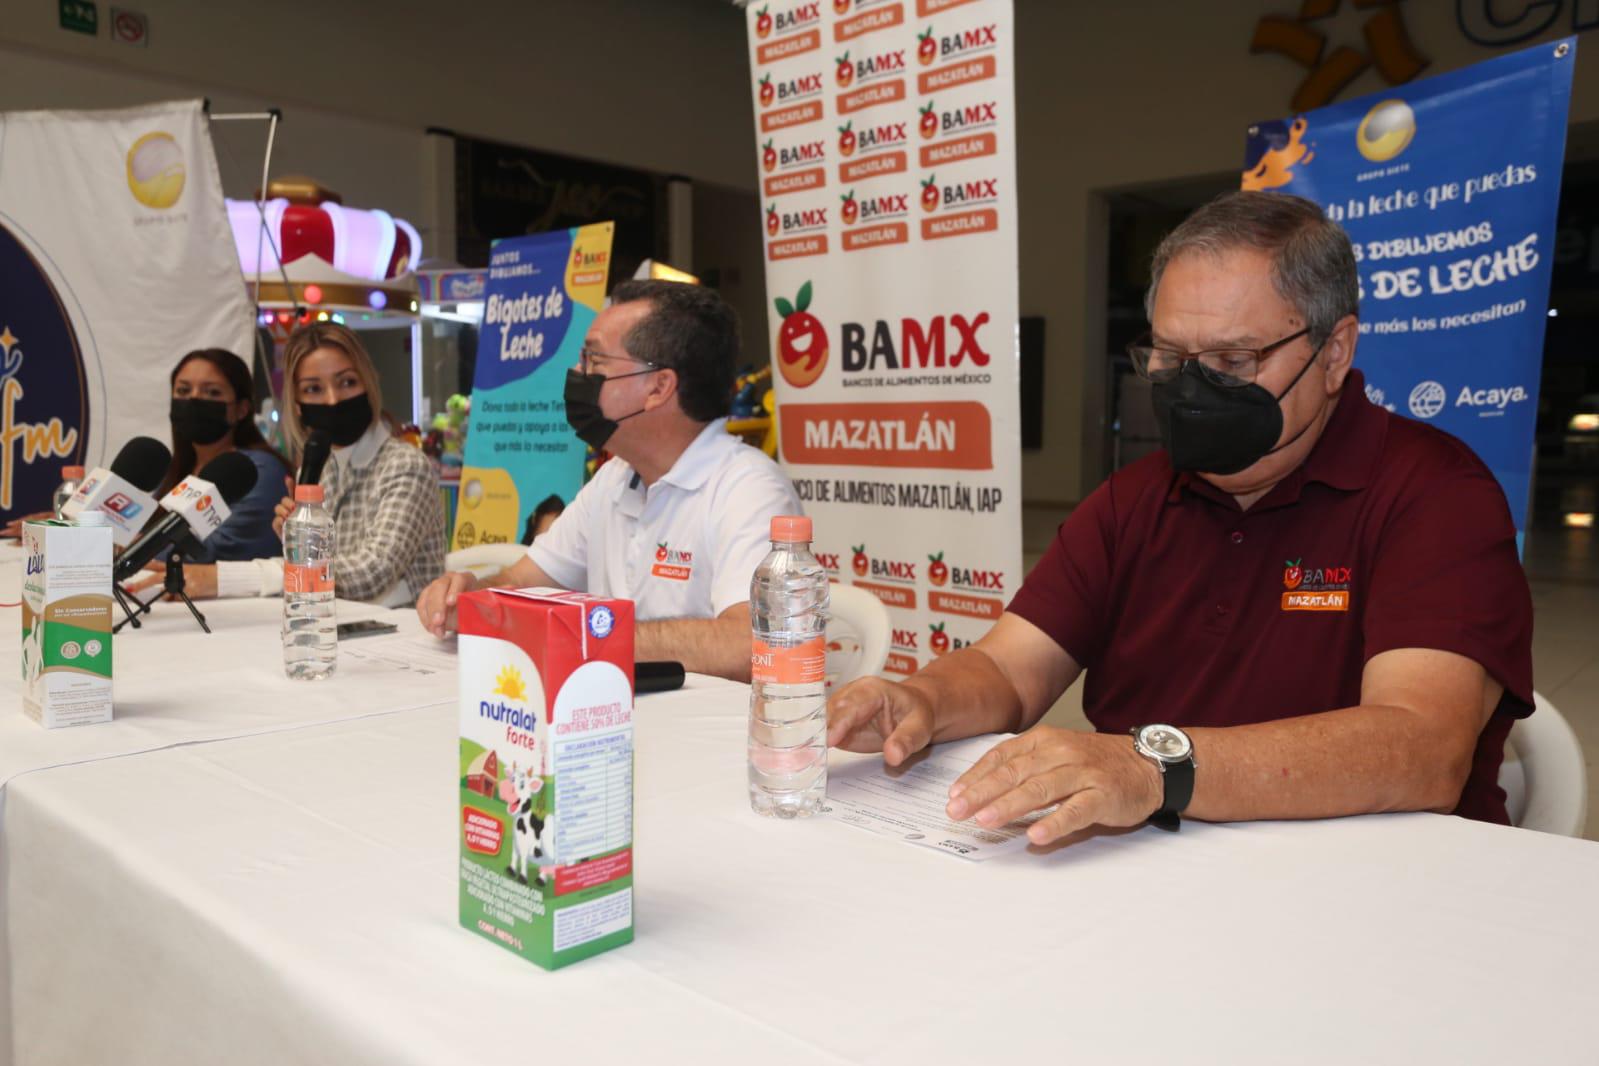 $!Invitan a donar leche para población vulnerable del sur de Sinaloa en campaña ‘bigotes de leche’